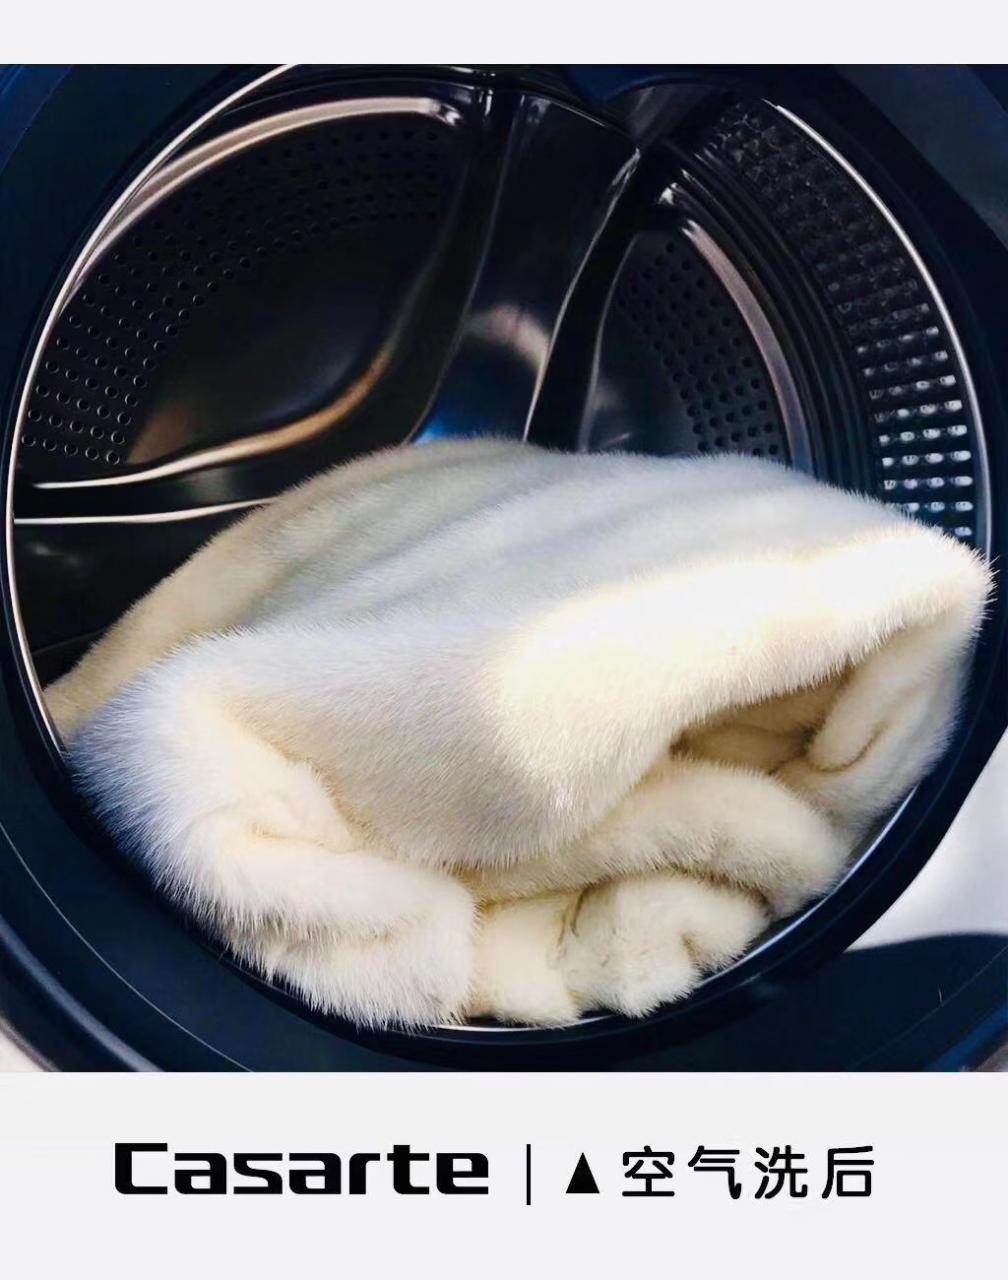 洗衣界的“明星”，空气洗真是个好东西